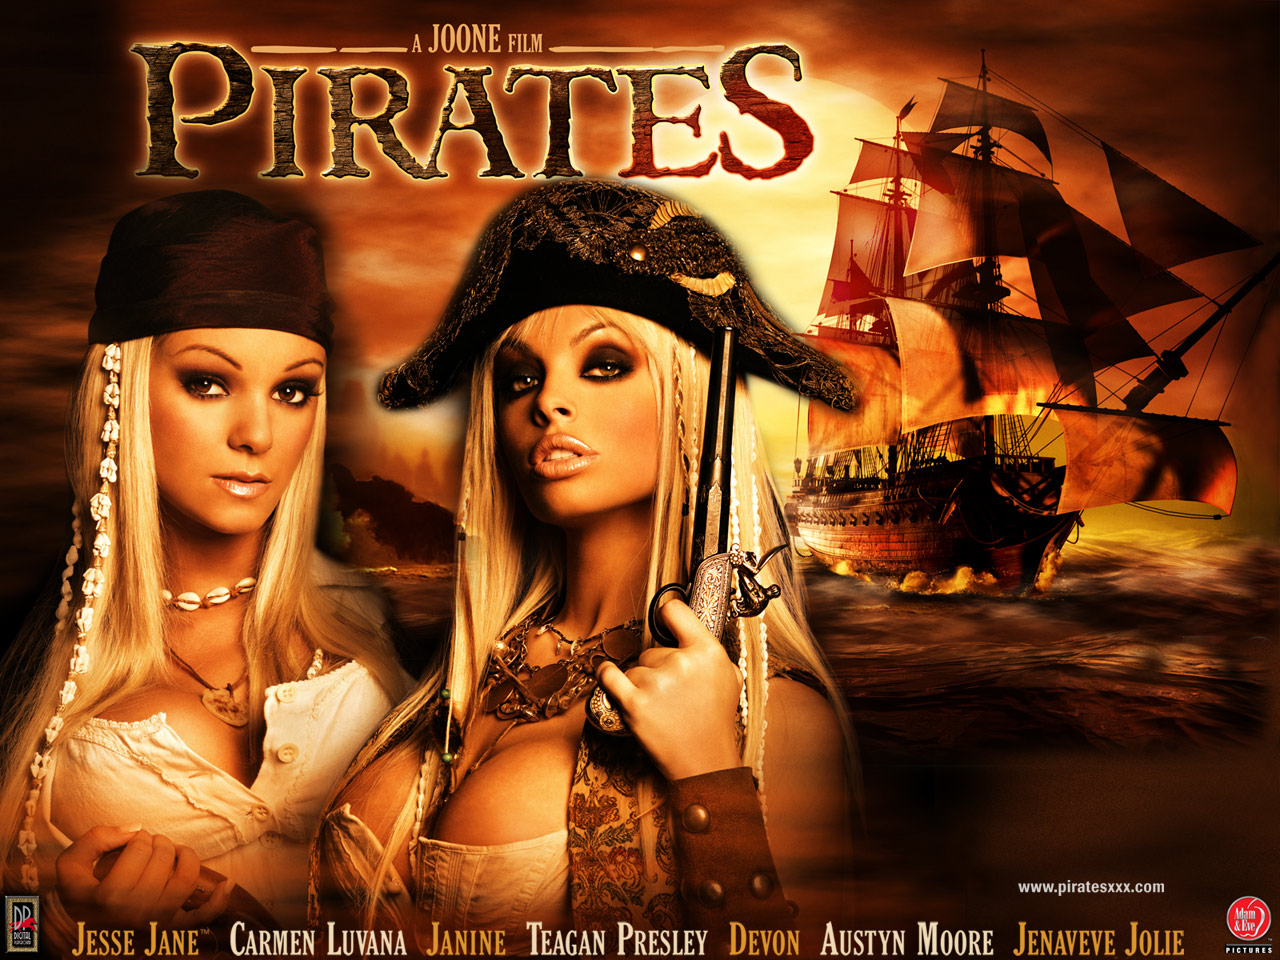 Pirates Xxx Jesse Jane Lesbian - Pirates (2005) â€“ Constantly Chrissie